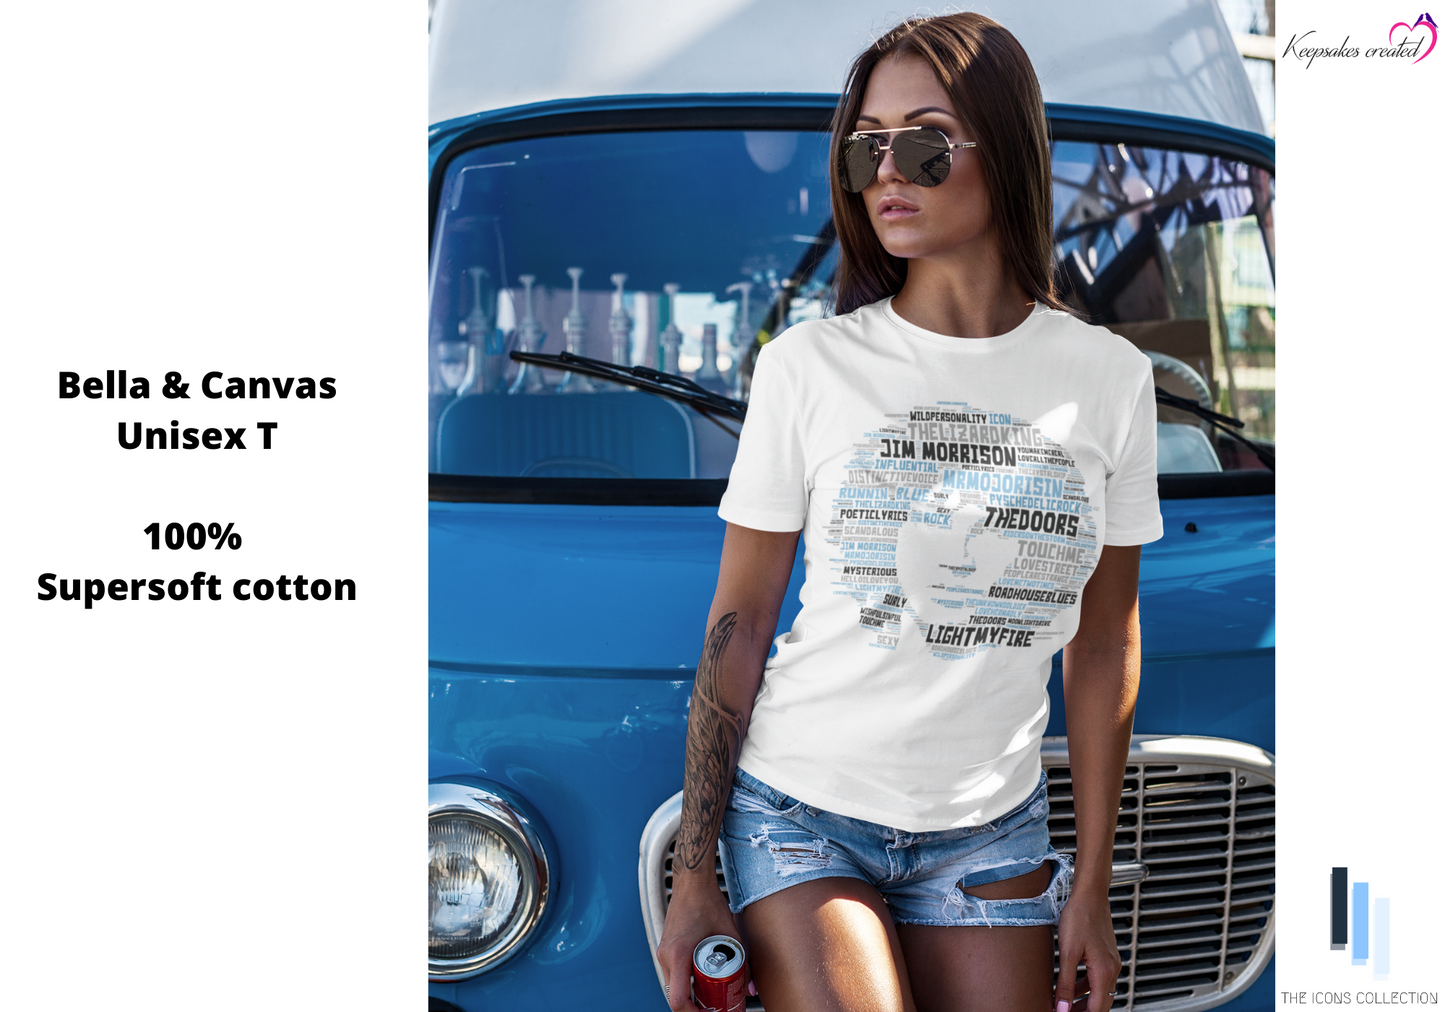 The Doors Jim Morrison Cool Music/Rock/Concert Premium Supersoft 100% Cotton Unisex T Shirt